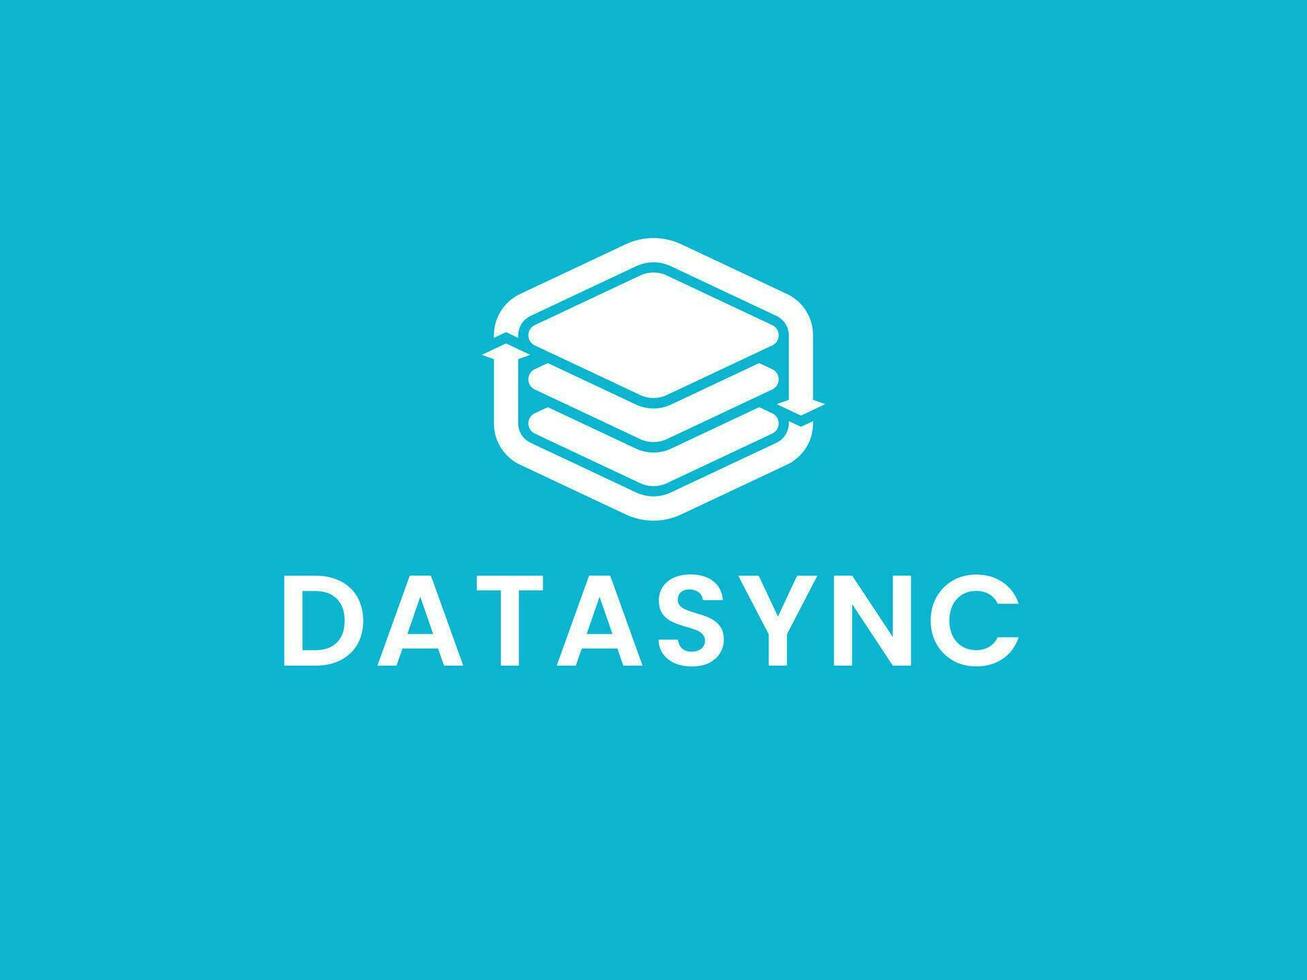 digitale dati sync logo concetto vettore